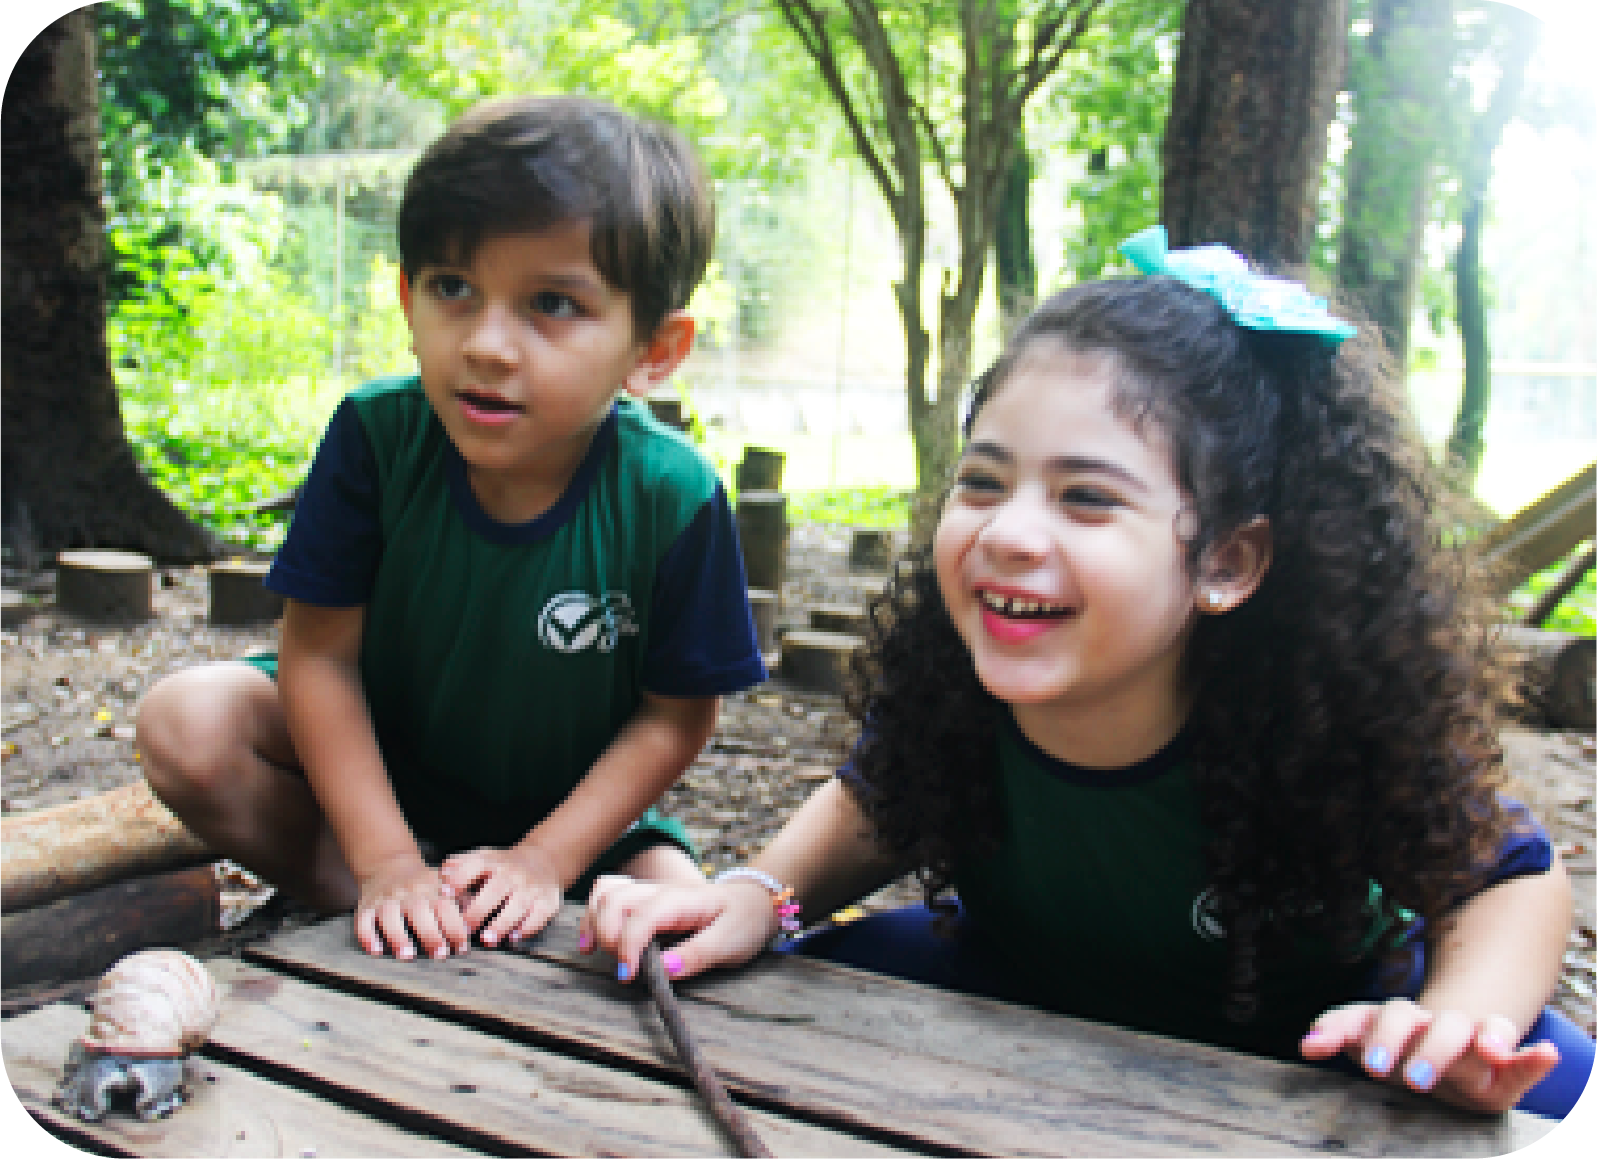 Foto de duas crianças sorridentes brincando na 'floresta' com mandeira.